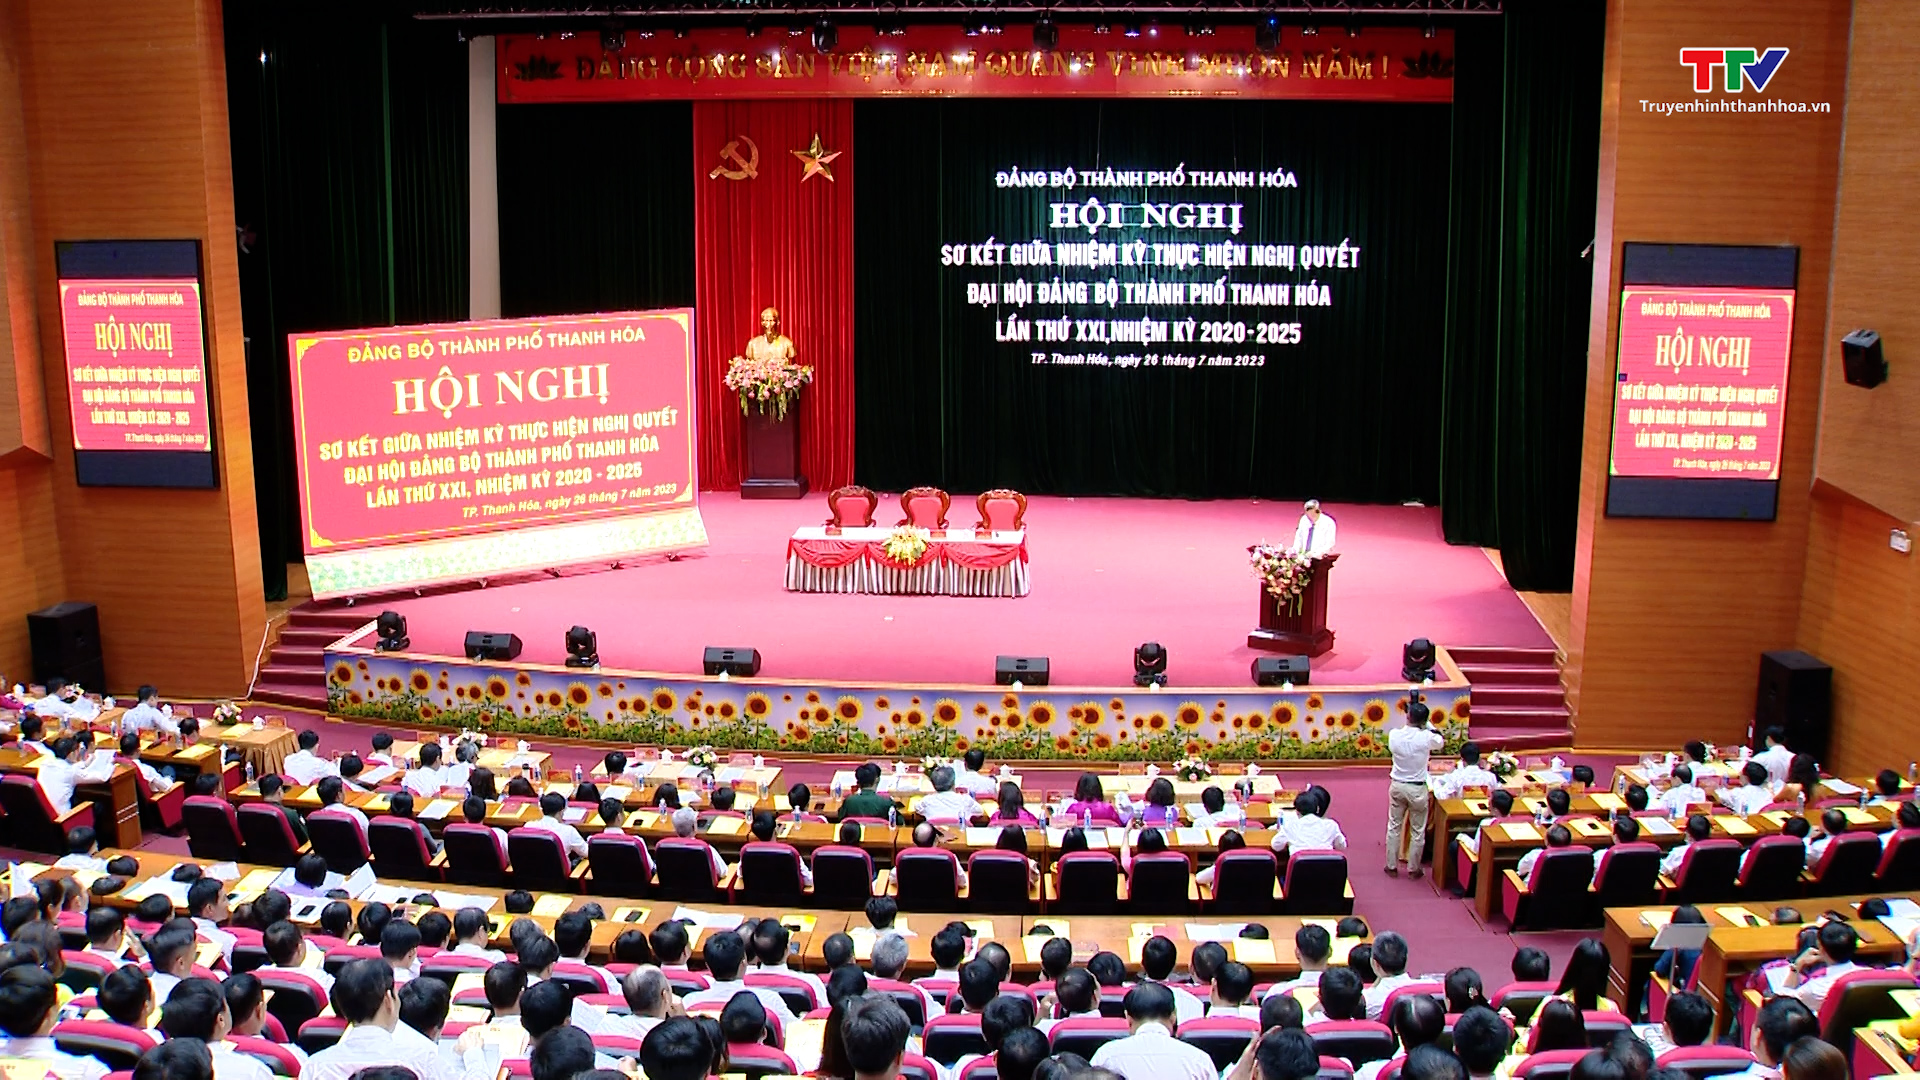 Đảng bộ thành phố Thanh Hóa sơ kết giữa nhiệm kỳ 2020 - 2025 - Ảnh 1.